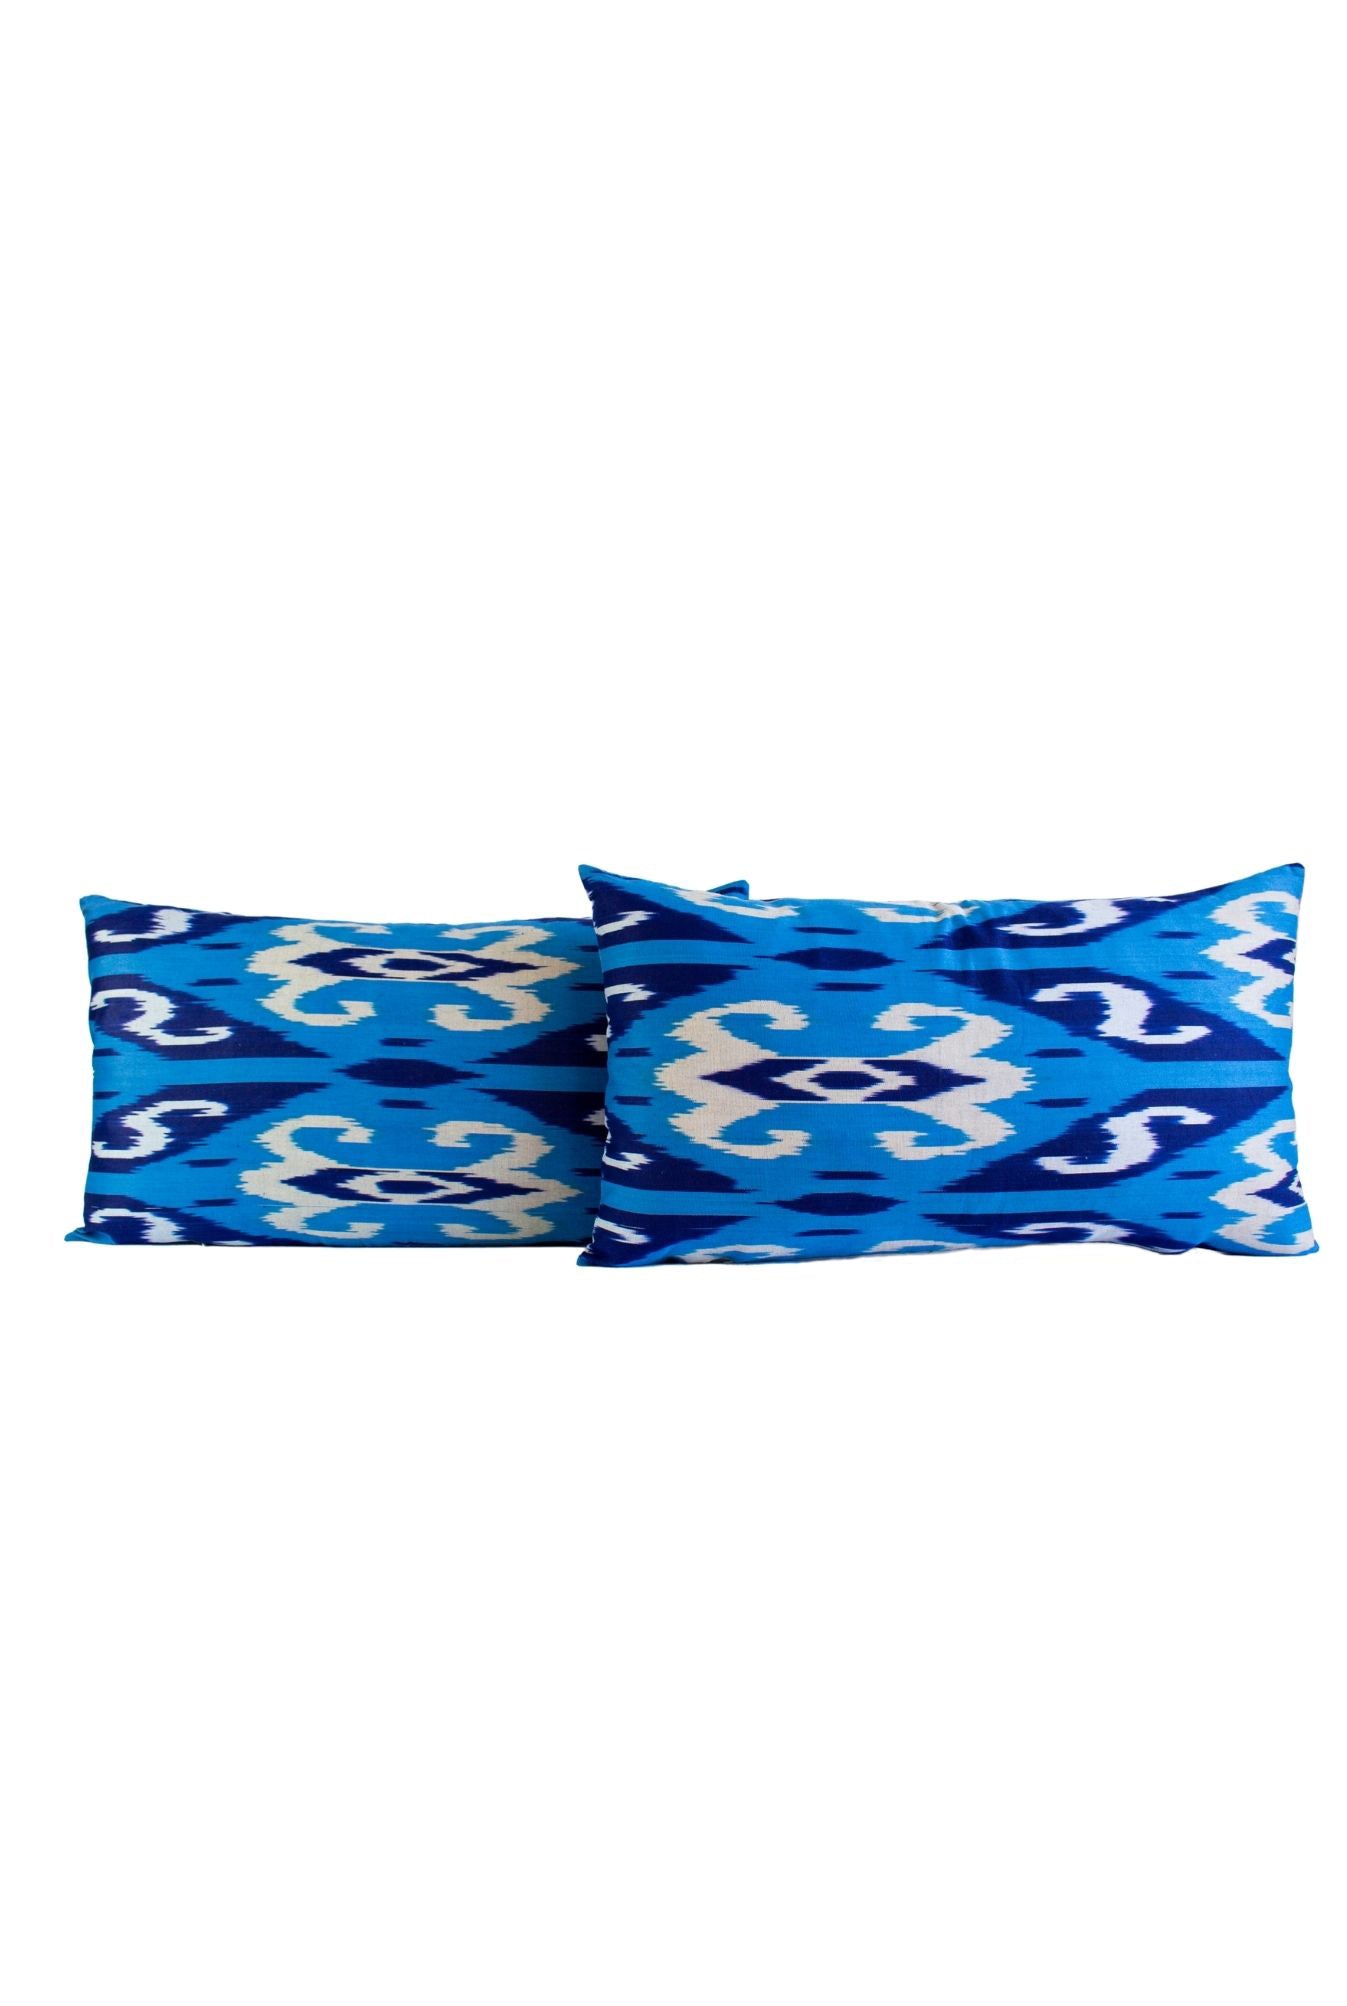 Ikat Pillows Blue Set of 2